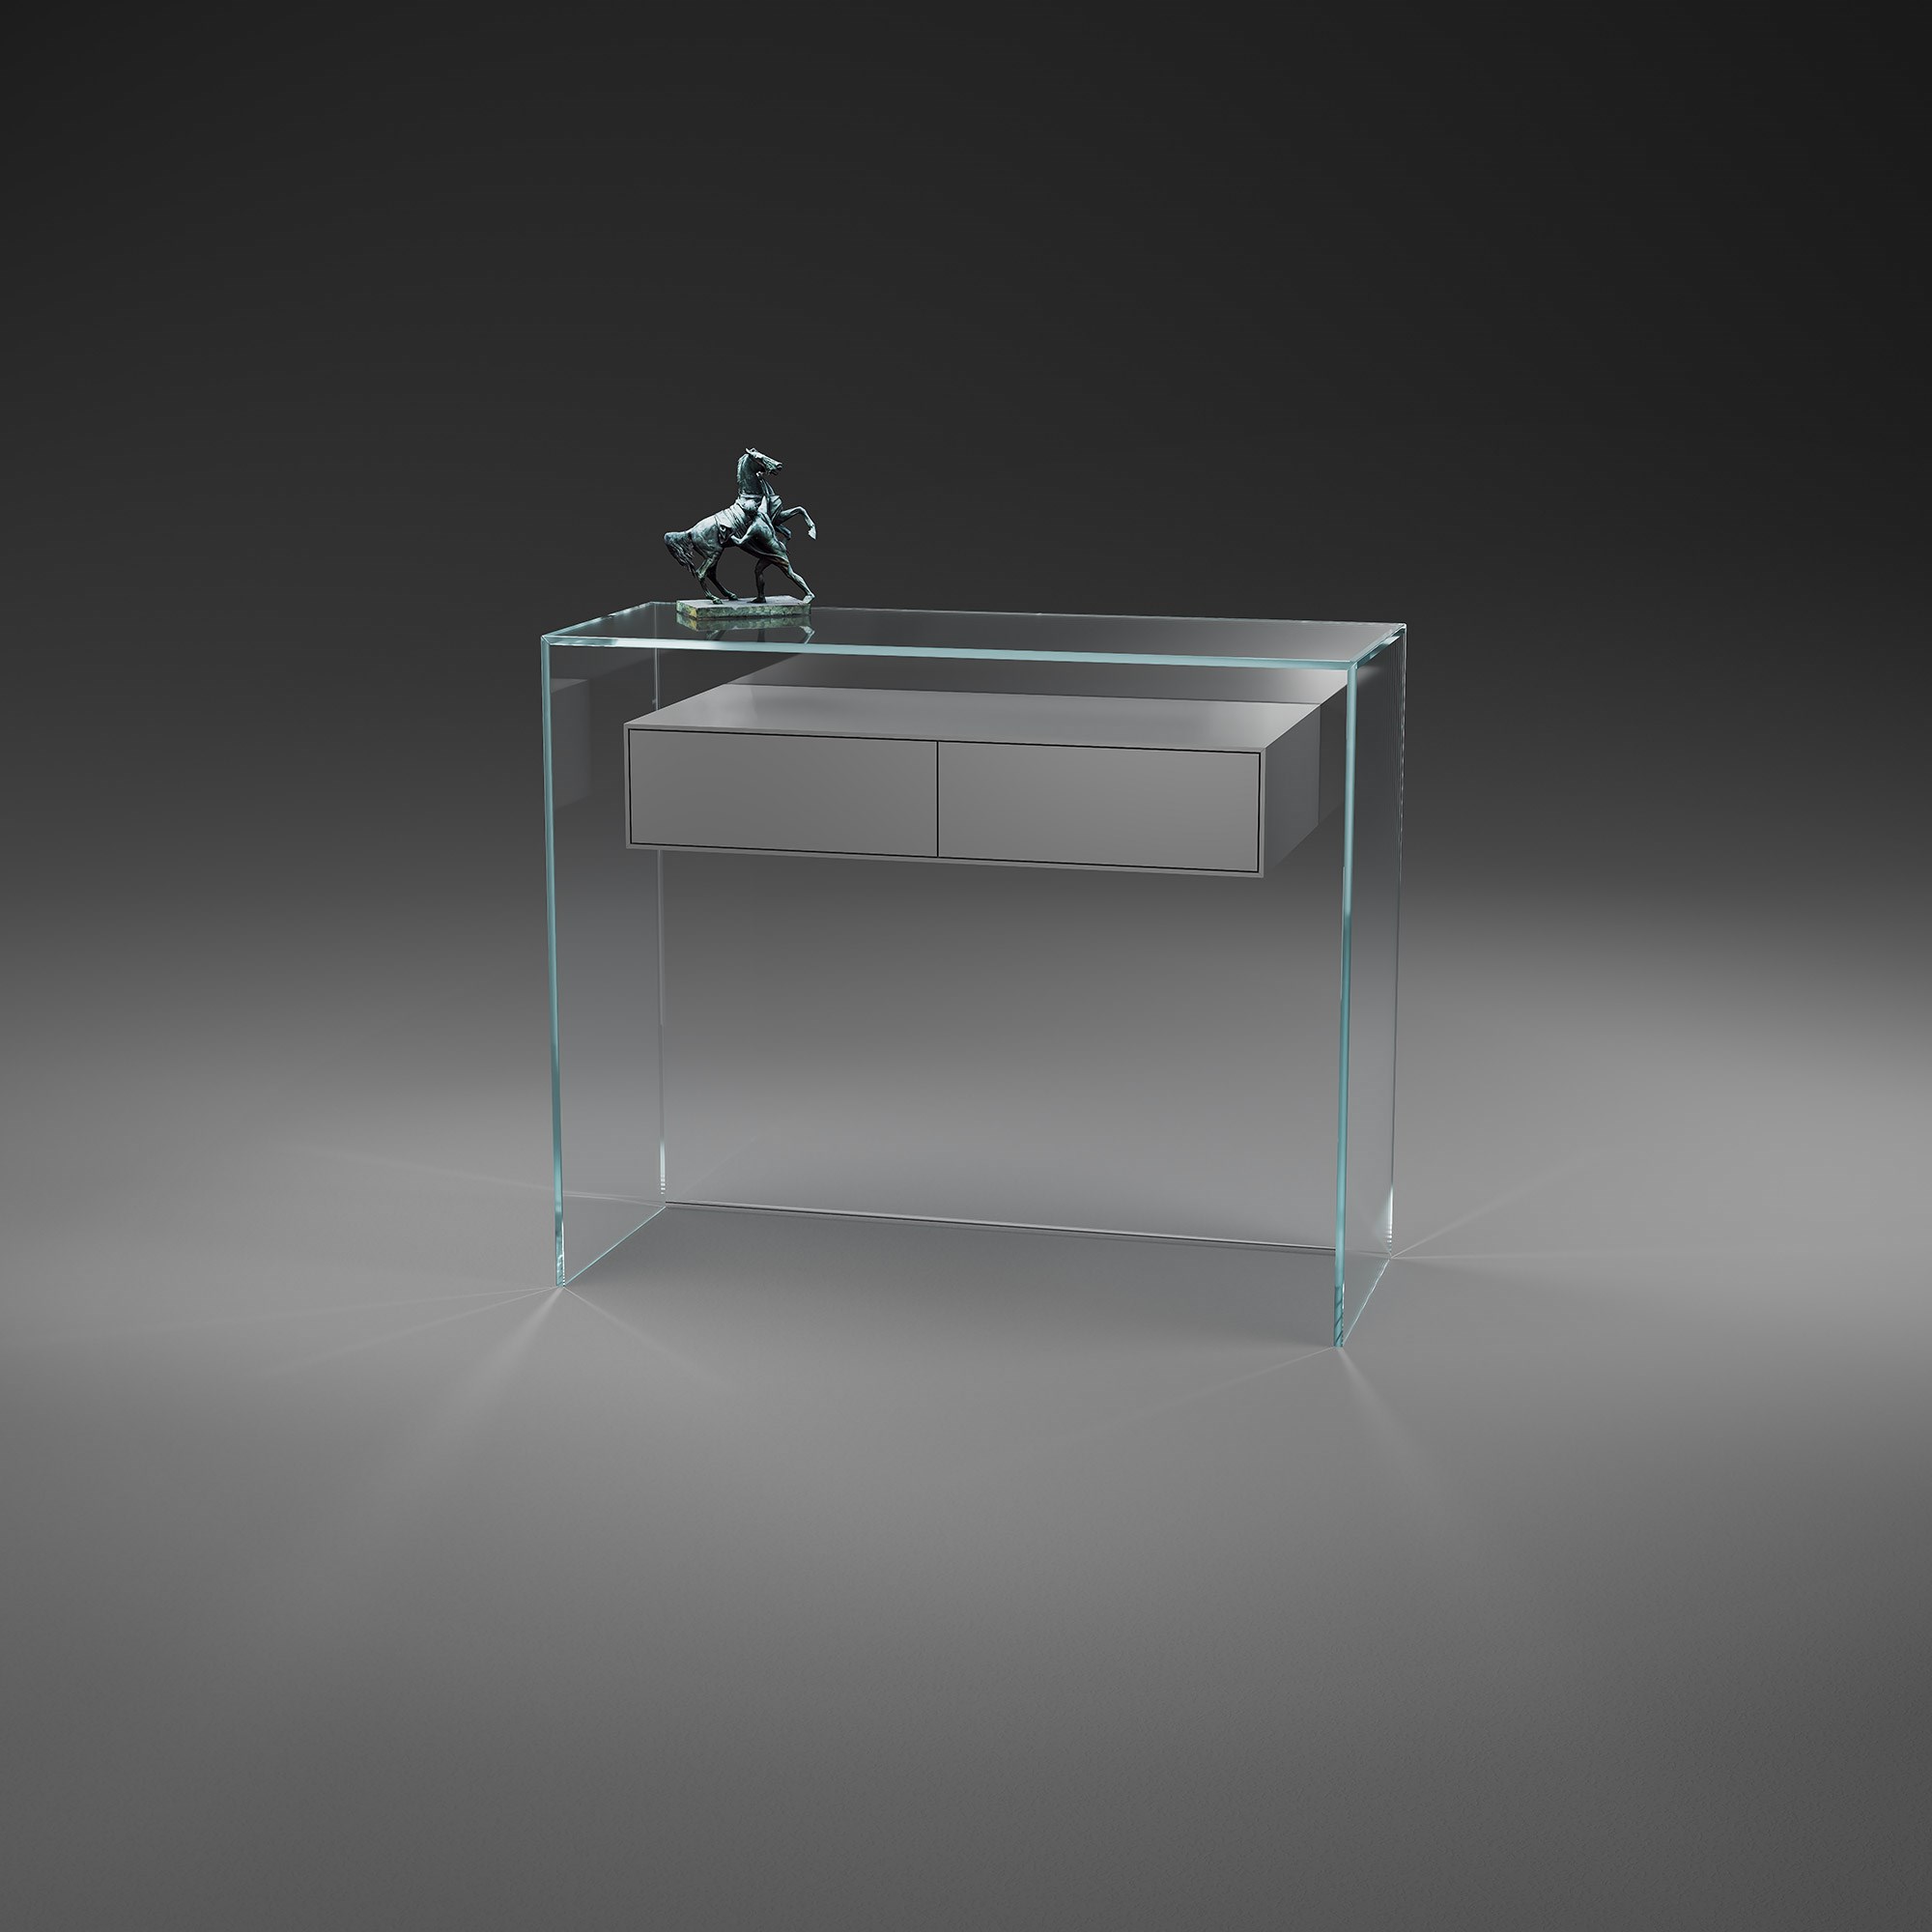 Glaskonsole mit Schubladen von DREIECK DESIGN: FLY 91 - OPTIWHITE - Schubladenelement fenstergrau seidenmatt